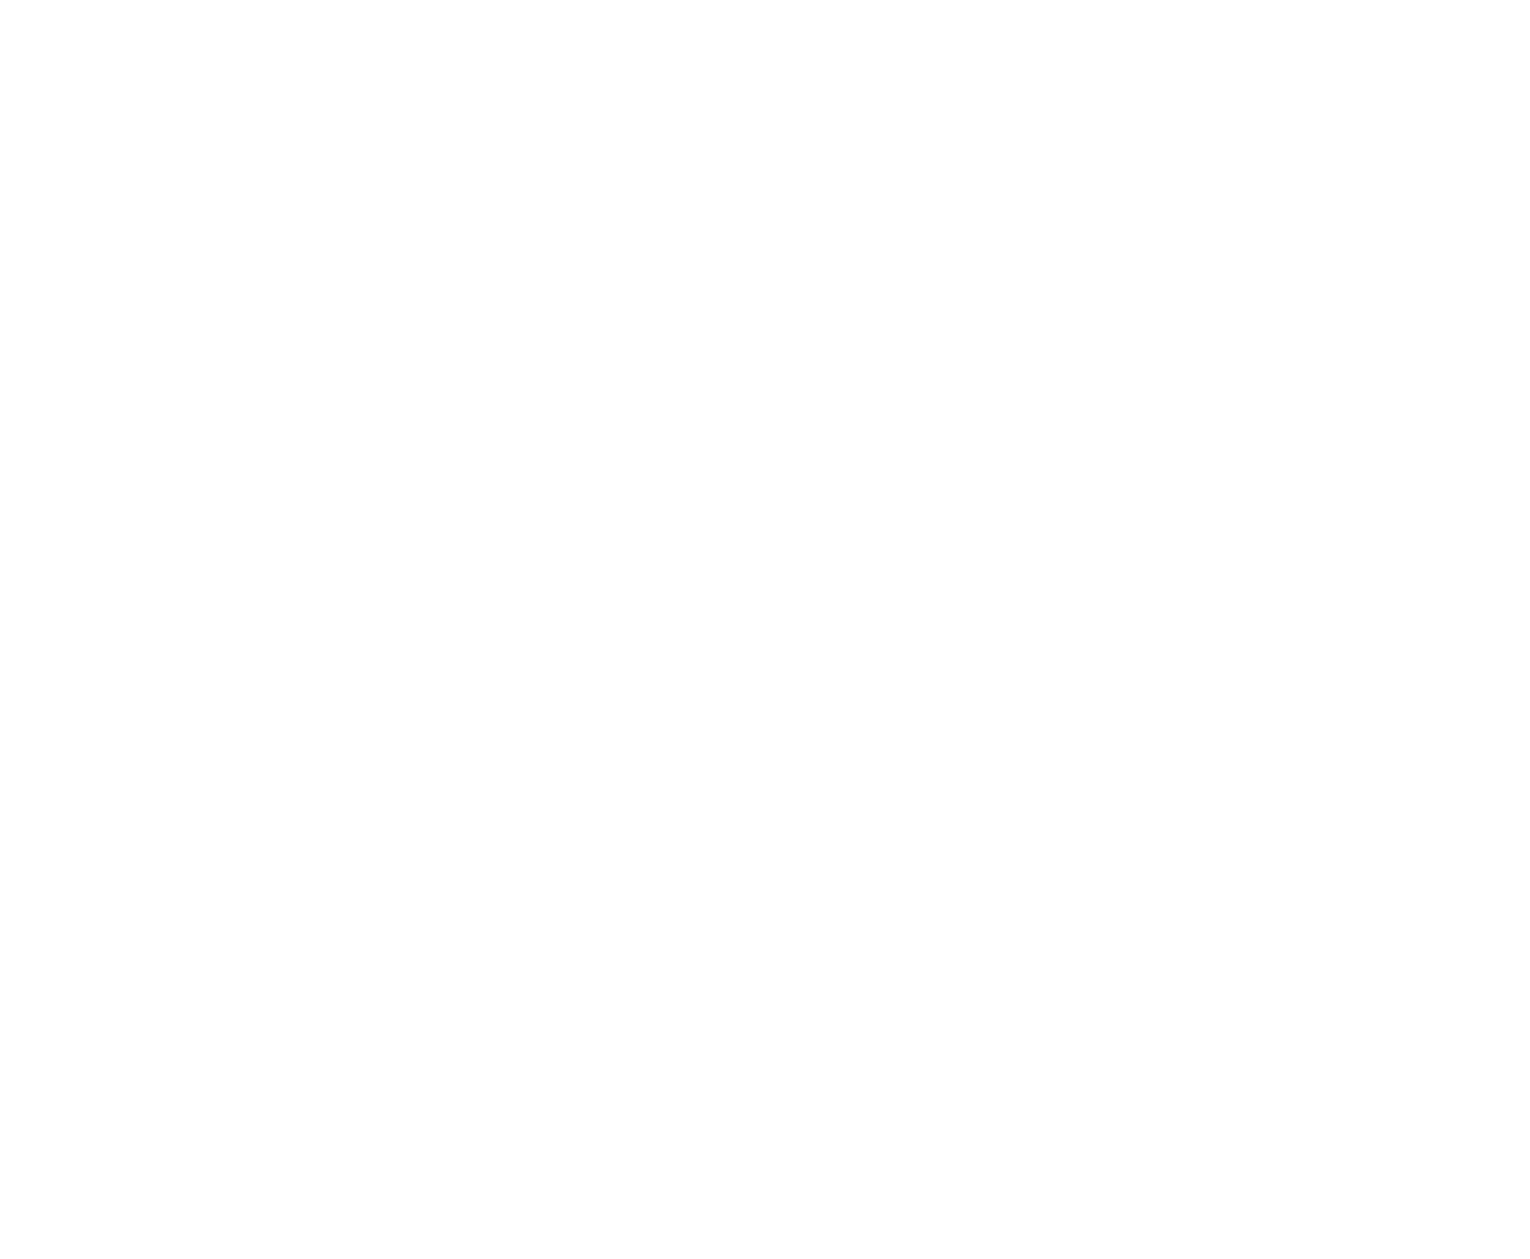 Aero Teardrops